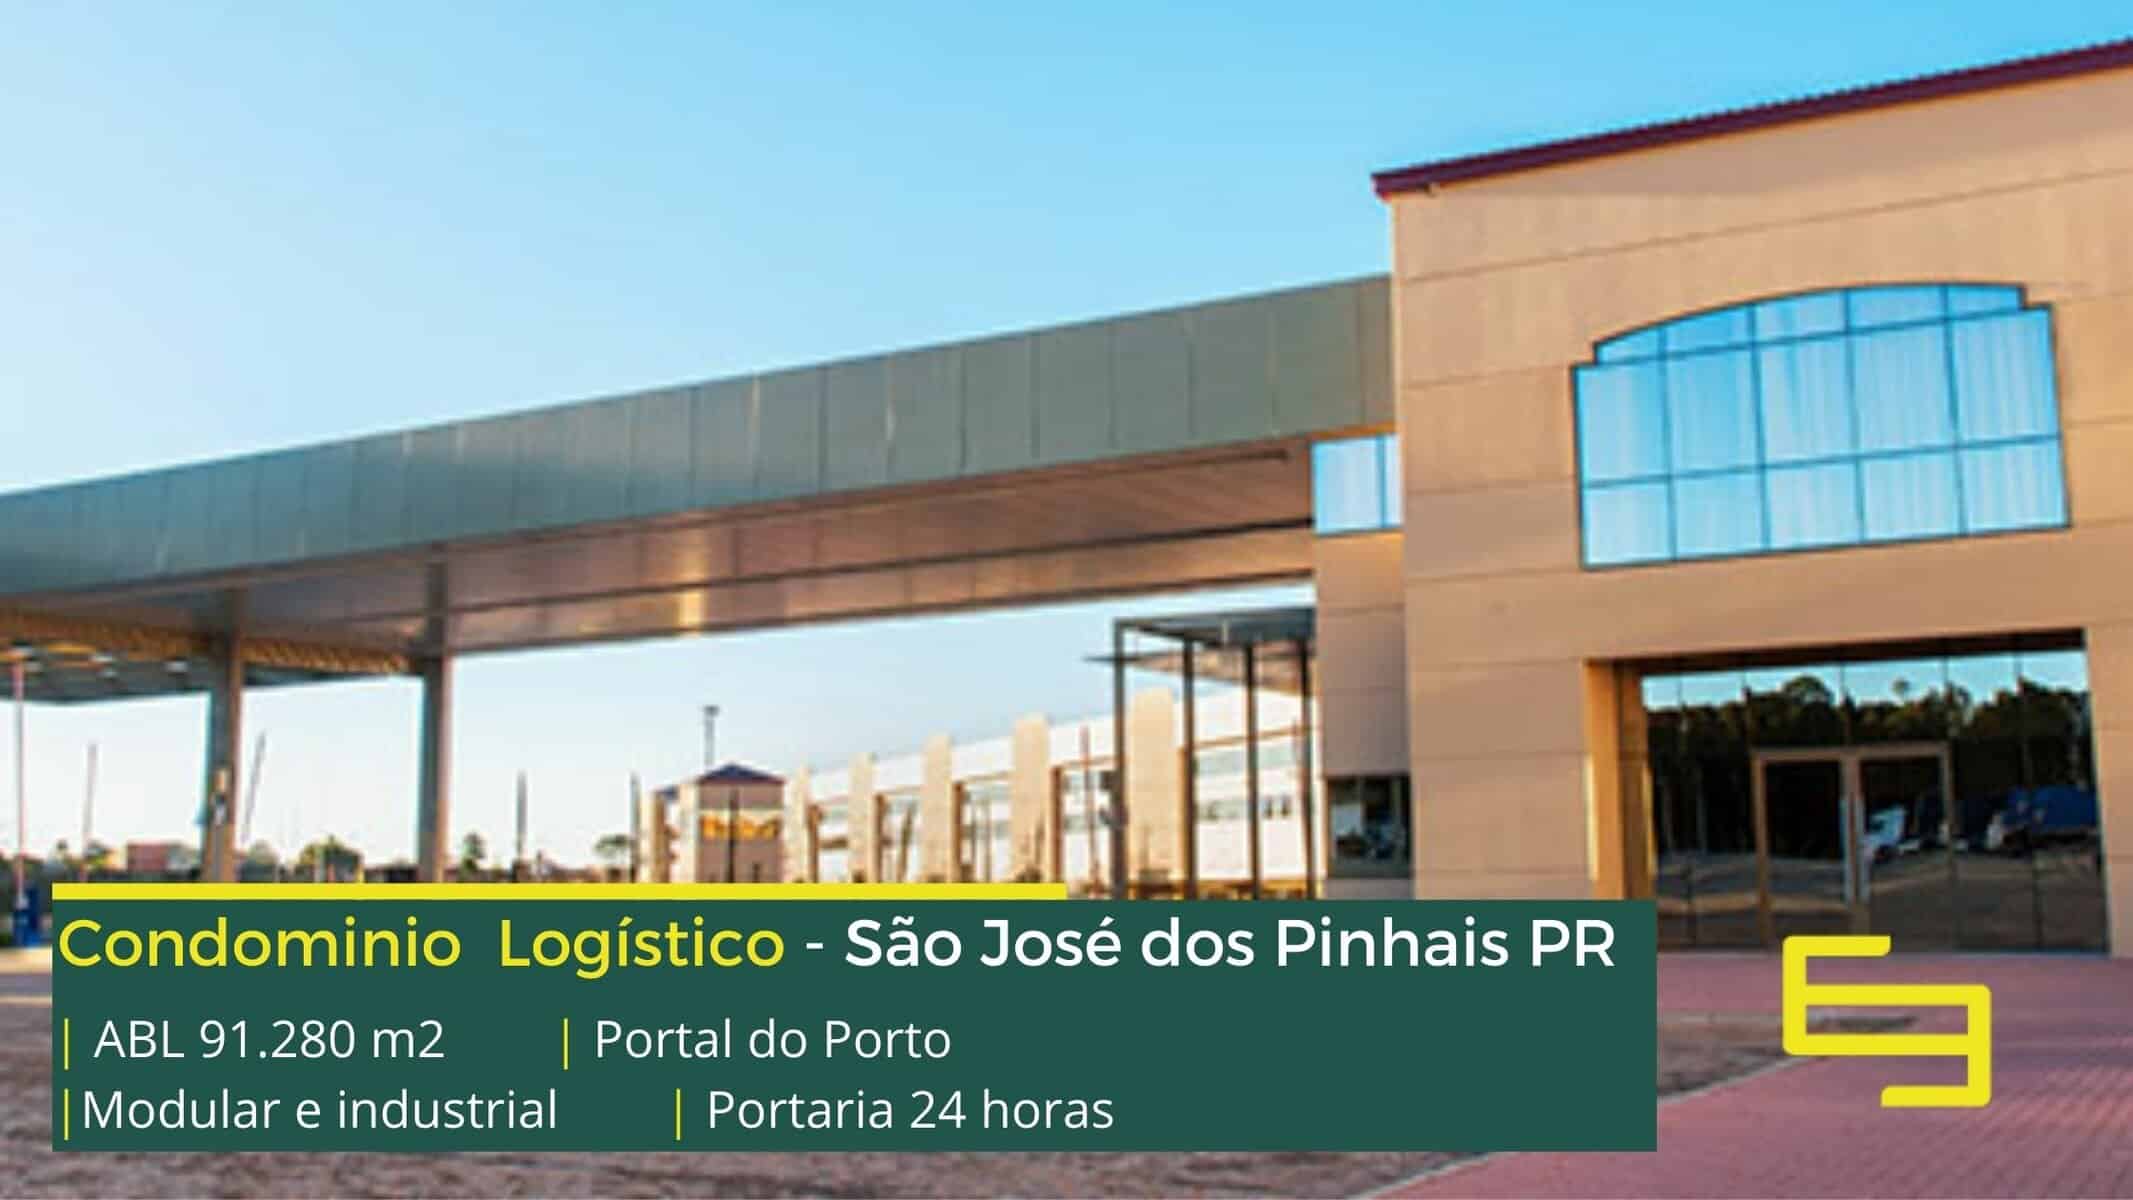 Playstation 4 Pro - São José dos Pinhais, Paraná